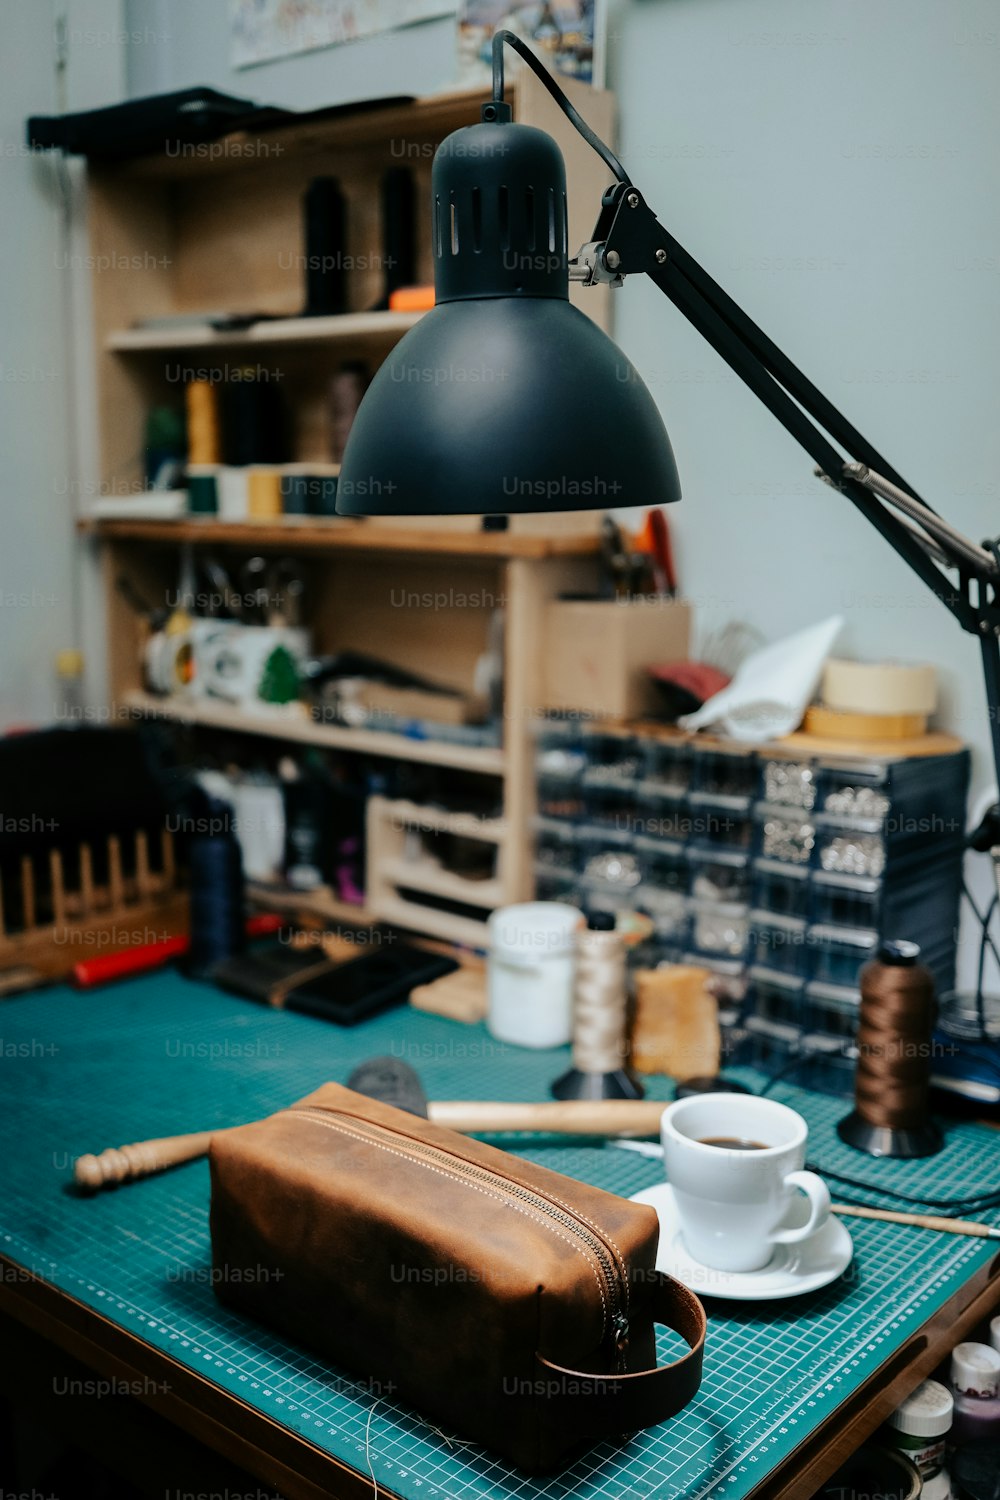 Una bolsa marrón encima de una mesa junto a una lámpara